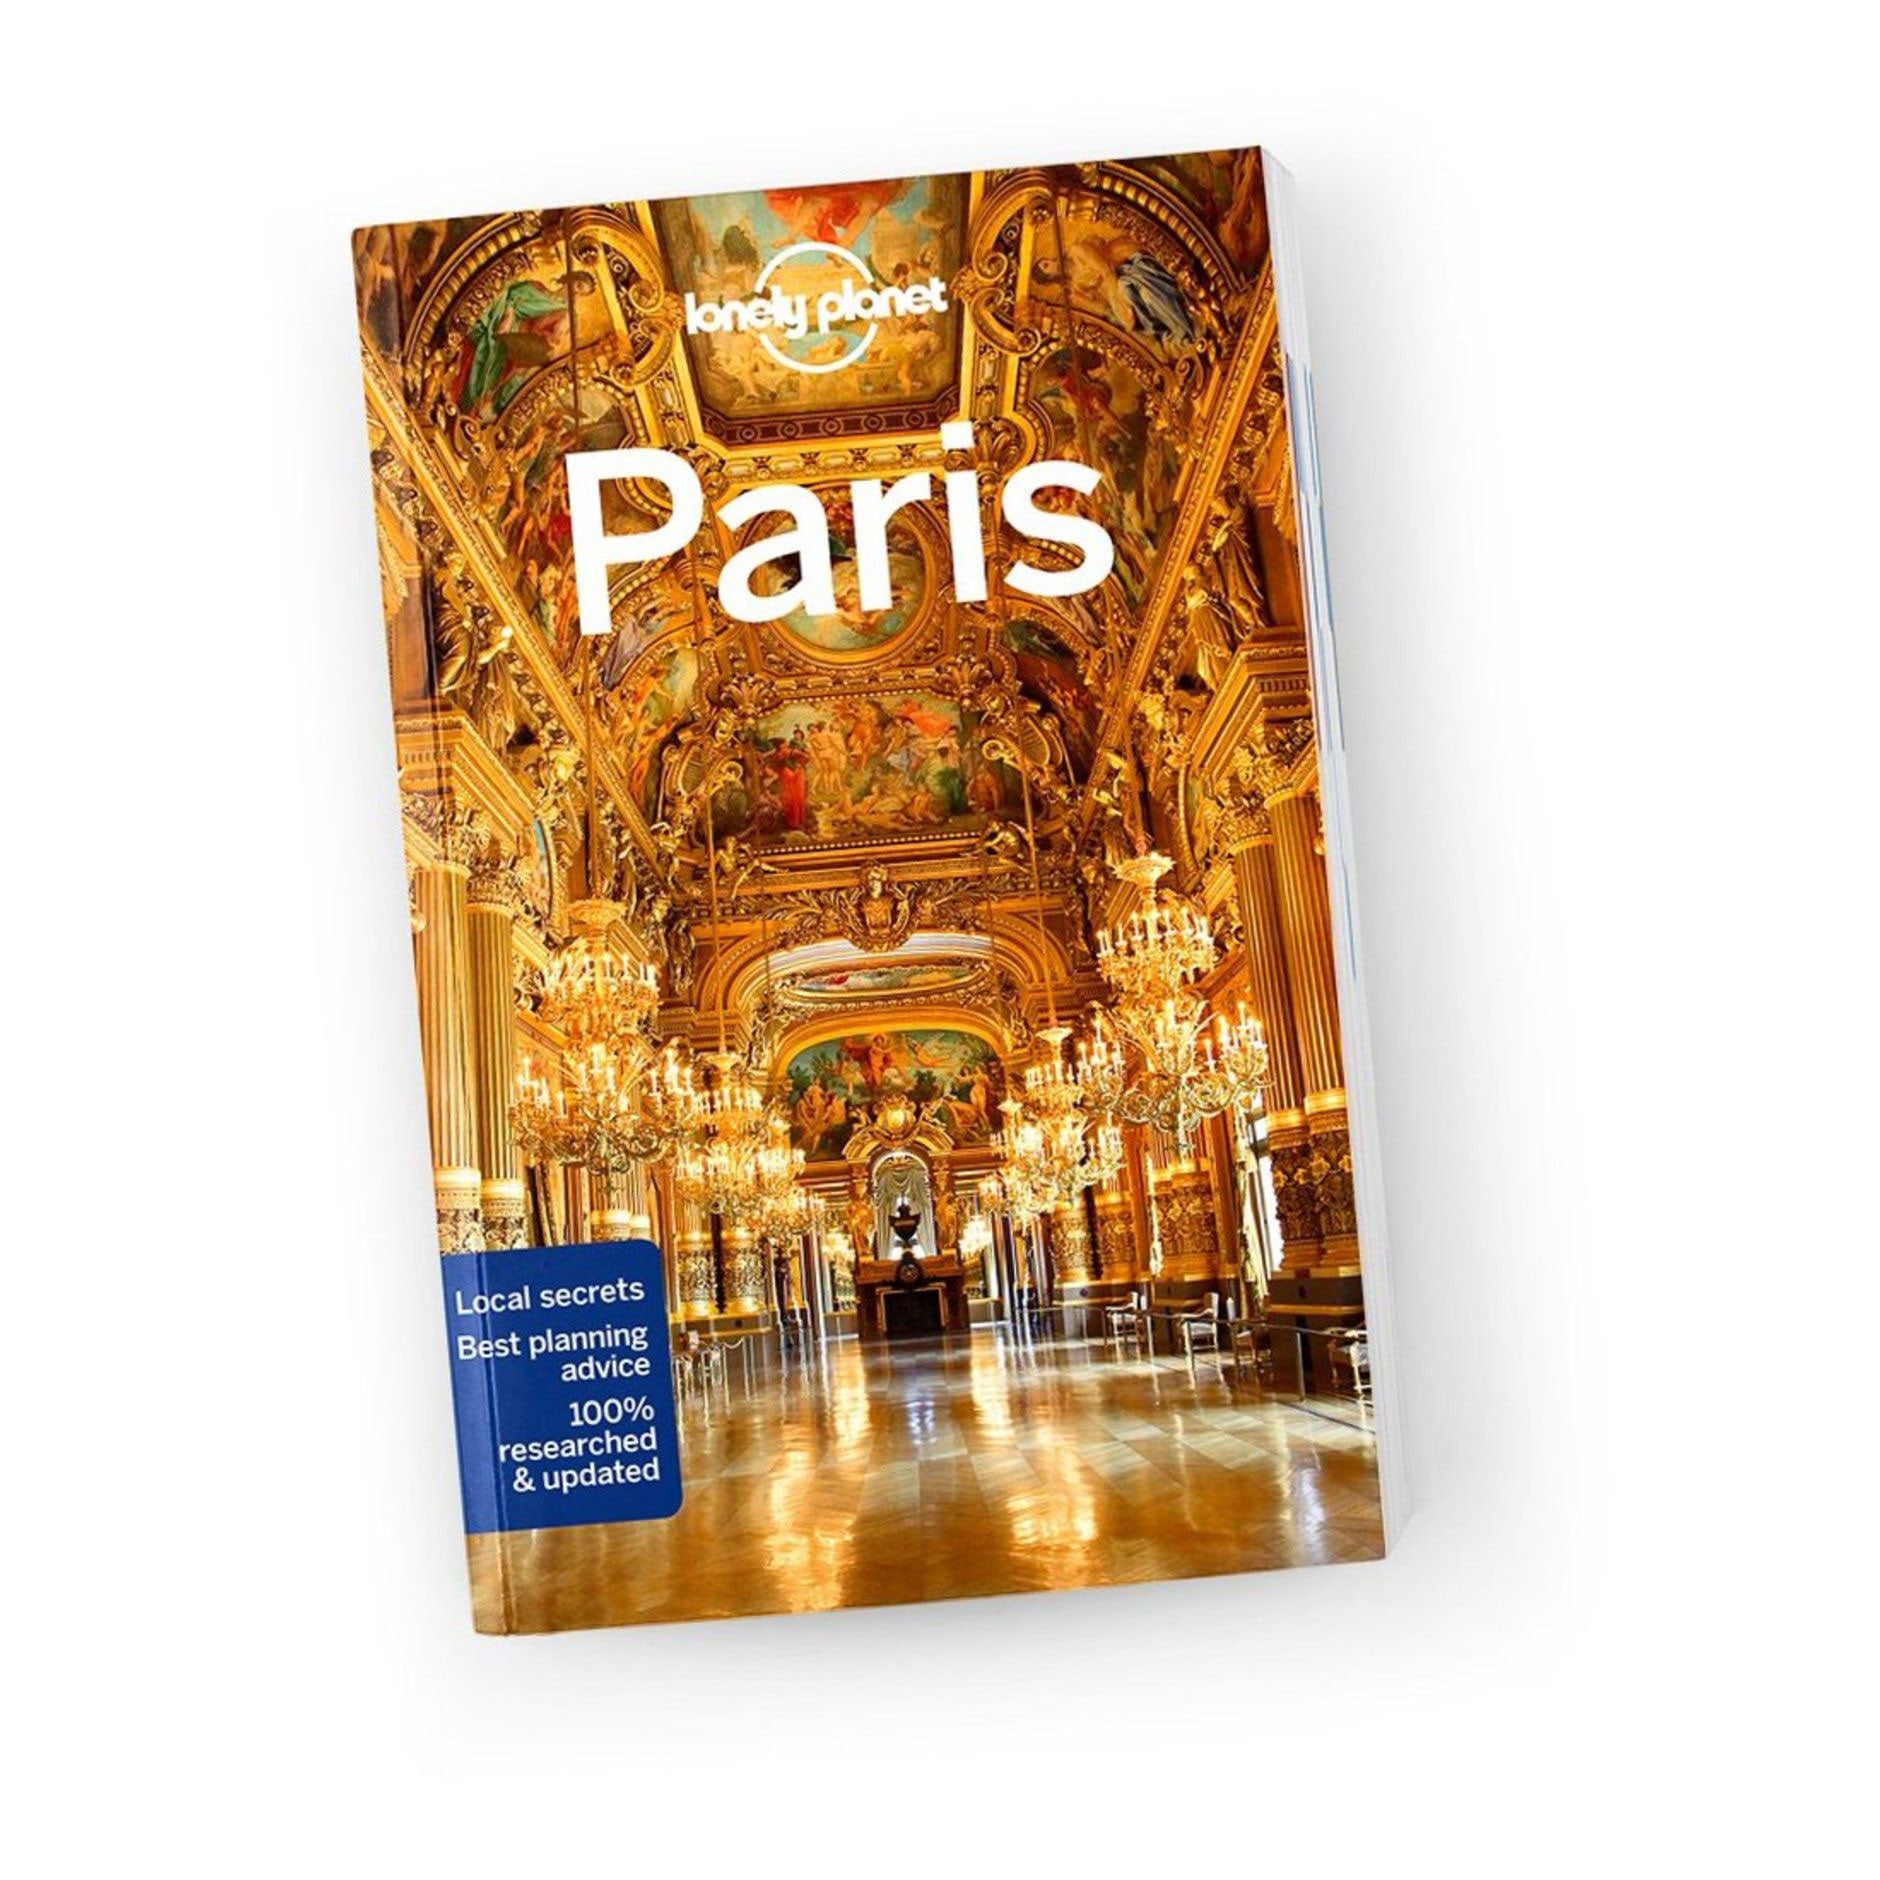 Paris Lonely Planet